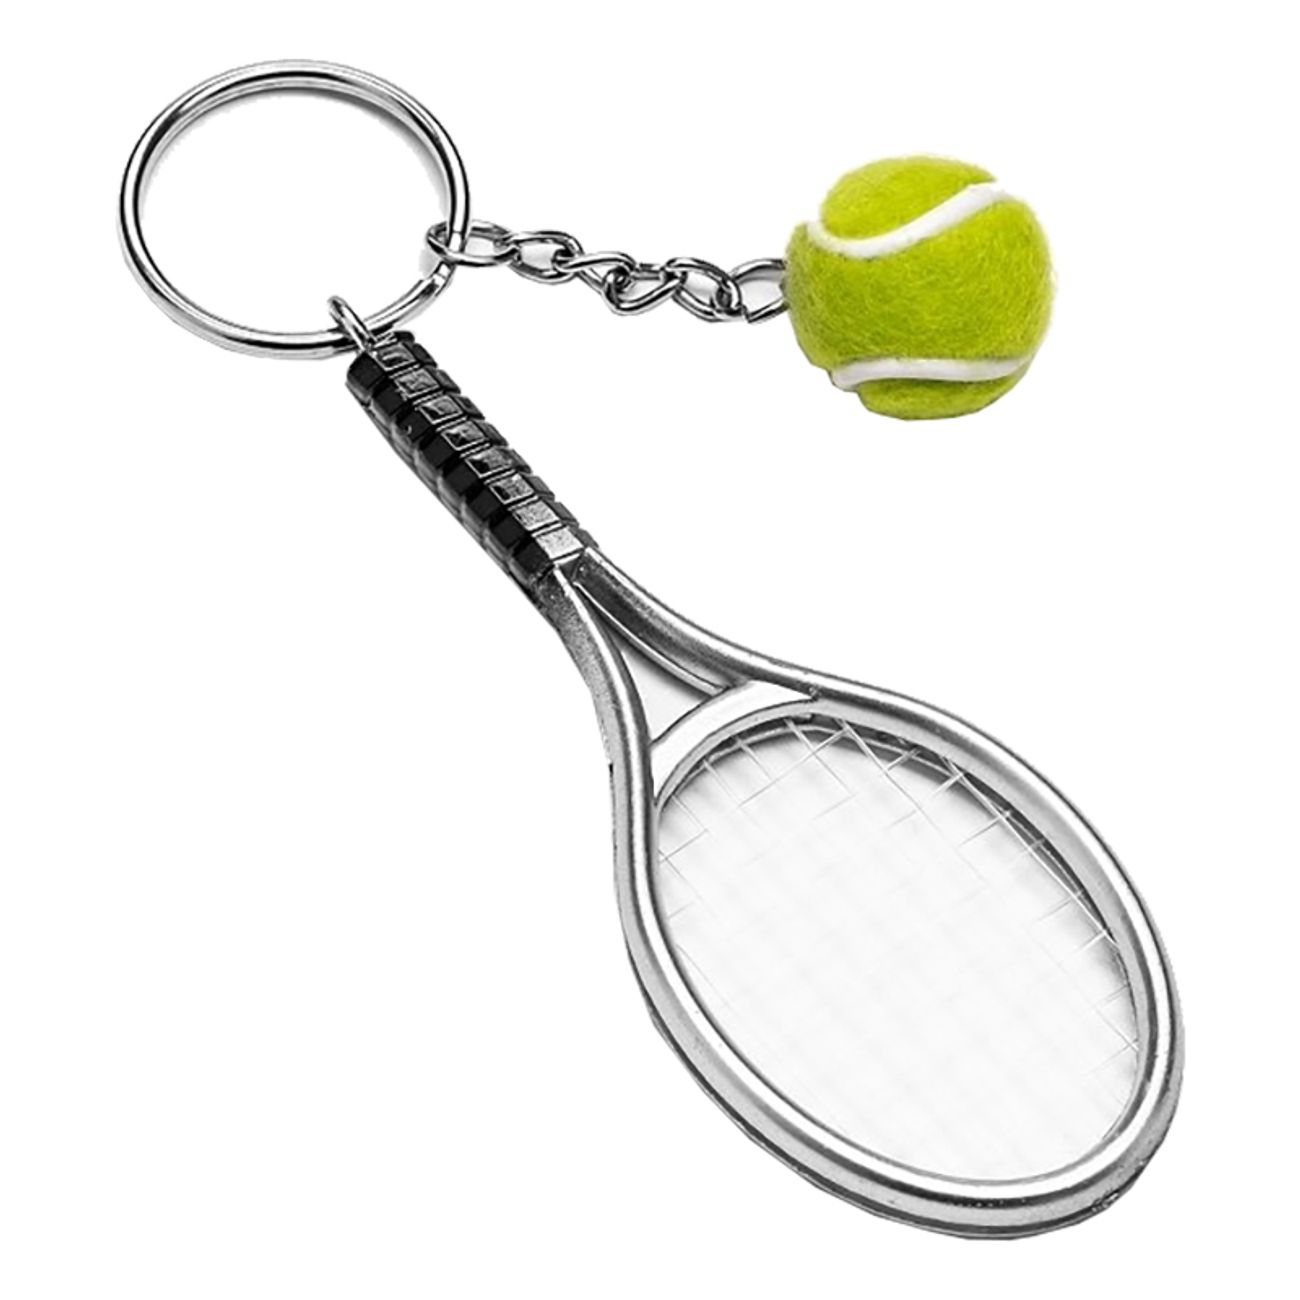 Sammenligning udmelding mængde af salg Nøglering Tennis | Partykungen